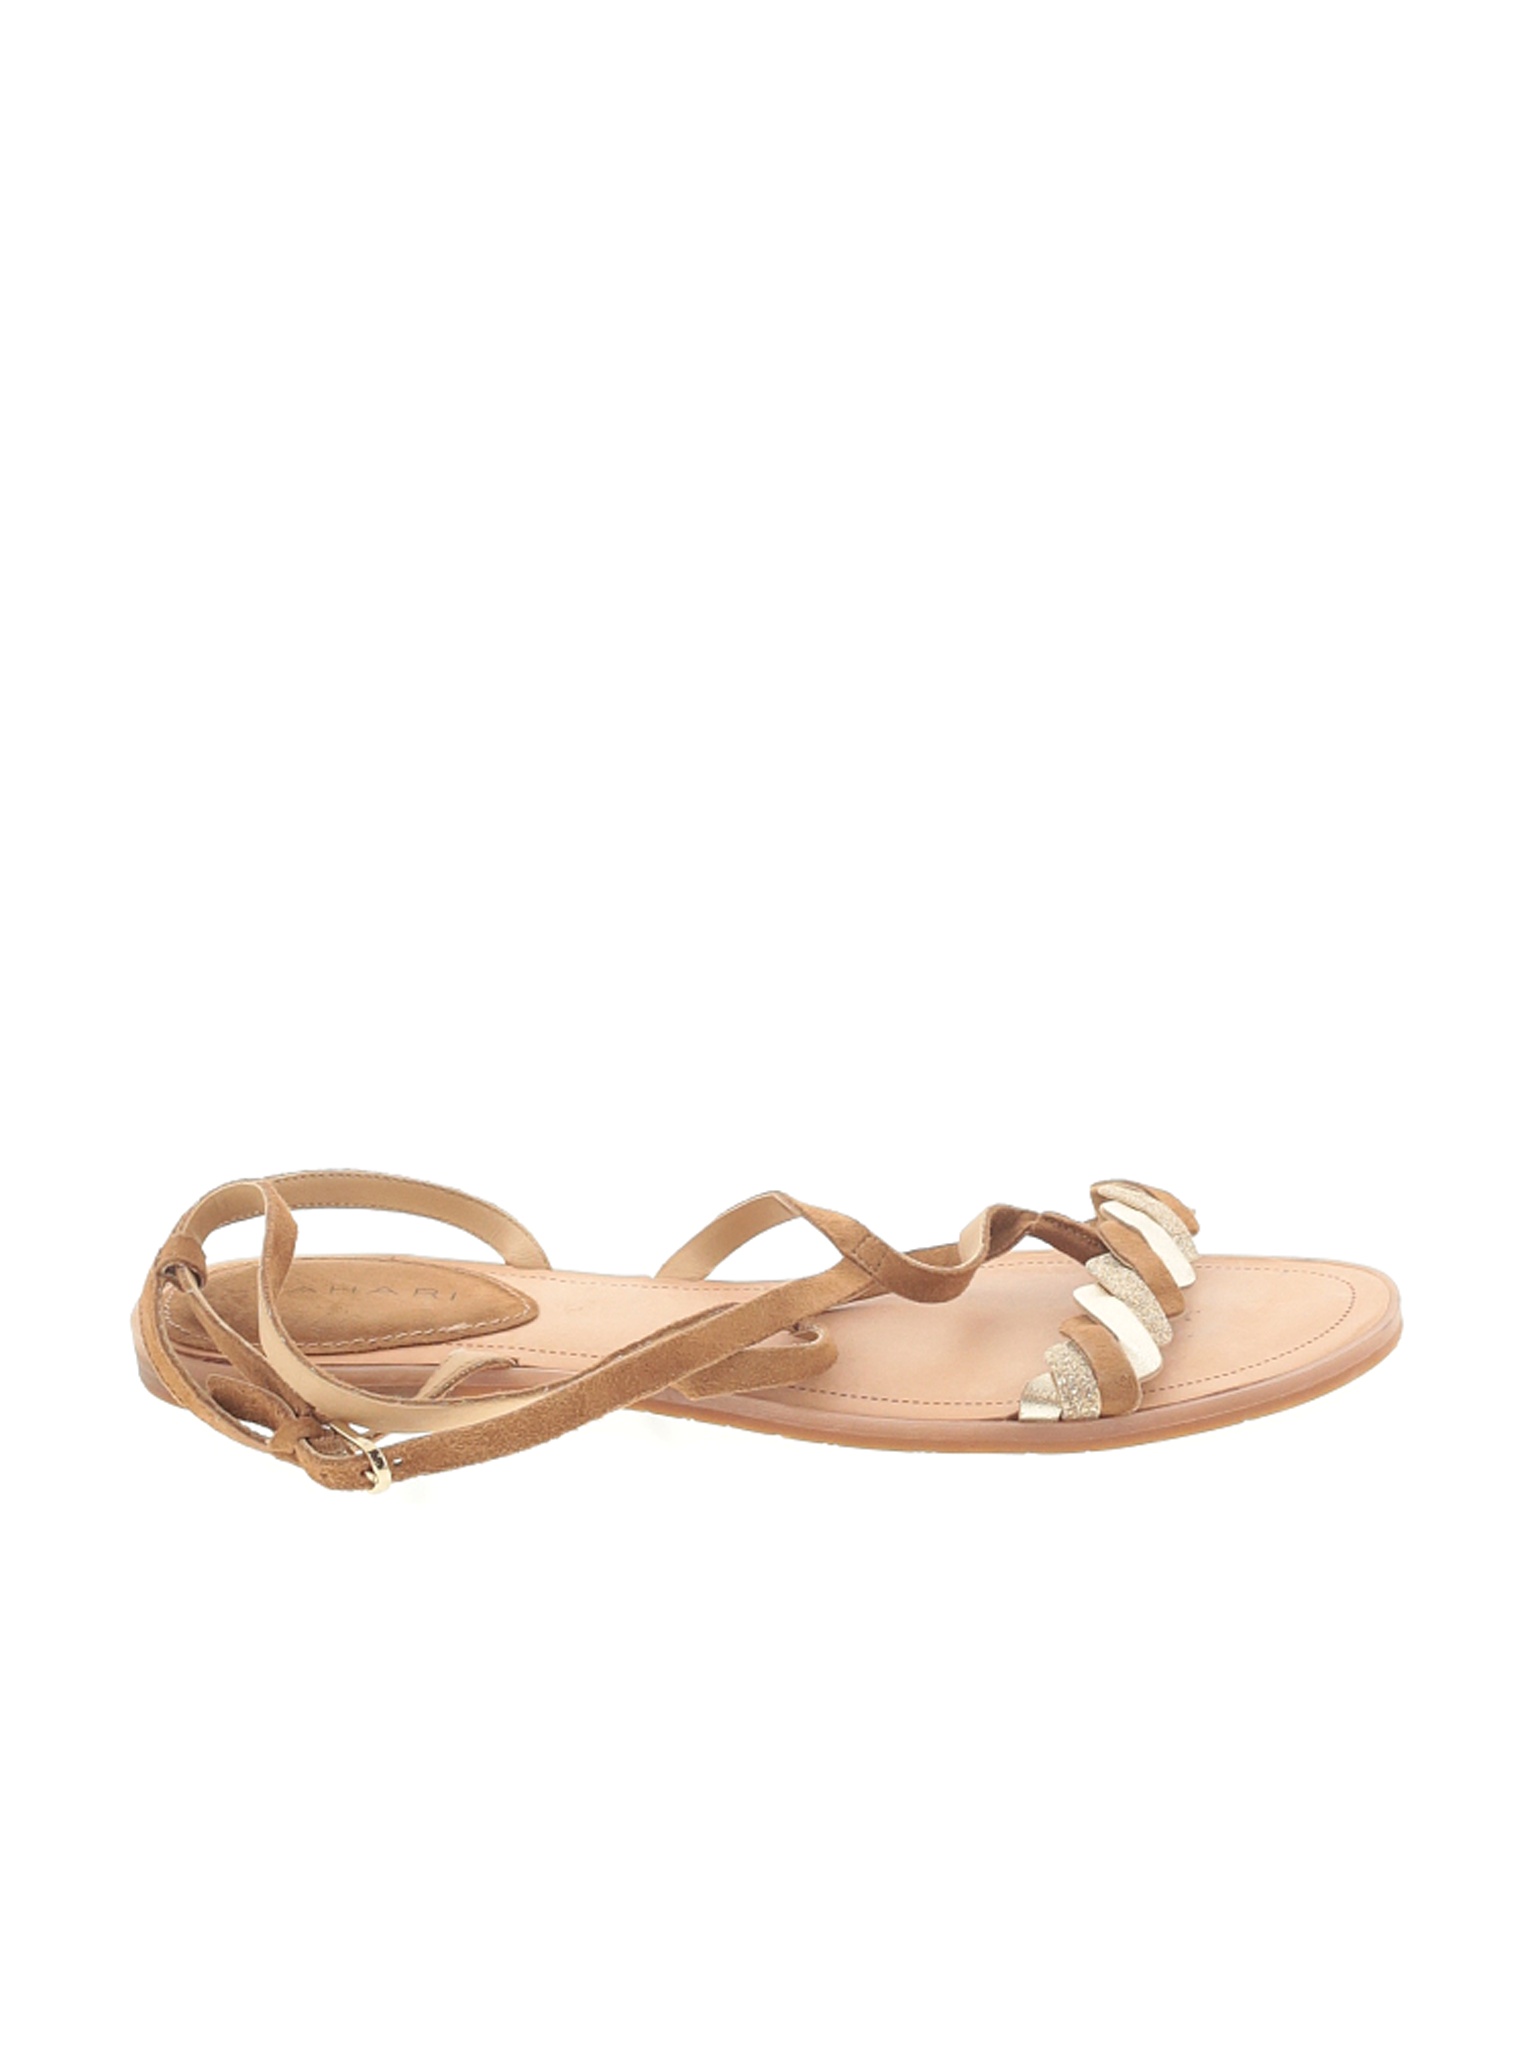 Tahari Women Brown Sandals US 10 | eBay